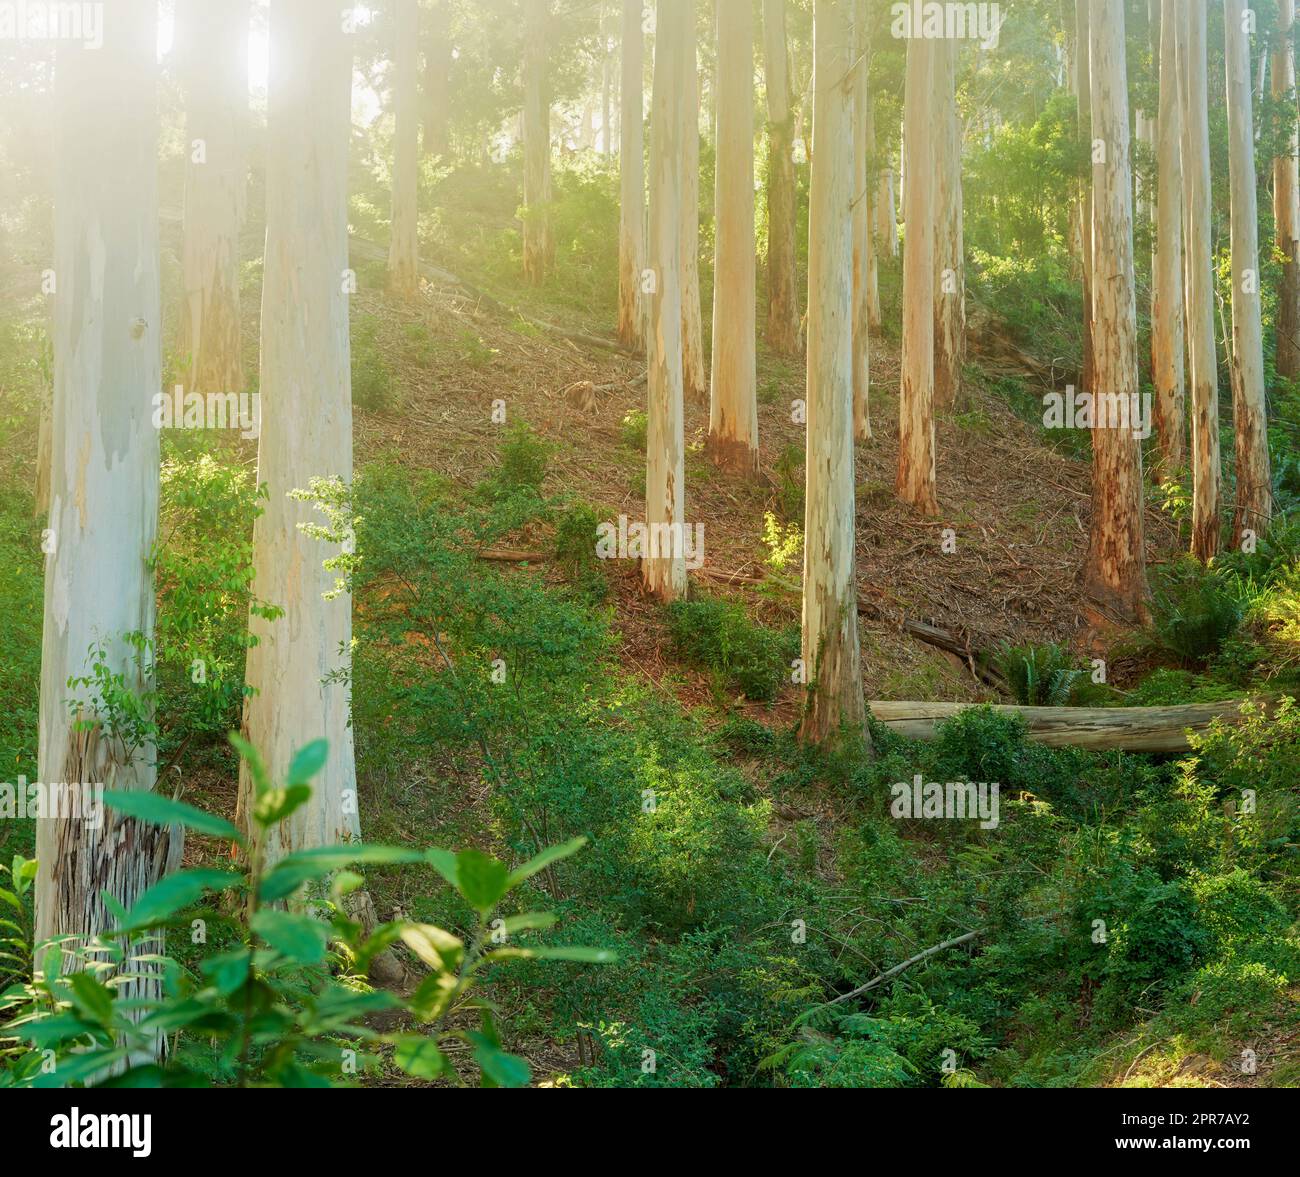 Landschaft mit Pinienwald und üppigen Sträuchern in den Bergen an einem sonnigen Tag. Schlanke Baumstämme und Grünflächen in einer abgeschiedenen Naturszene. Tourismus oder Wandern in der Natur in Südafrika, Westkap Stockfoto